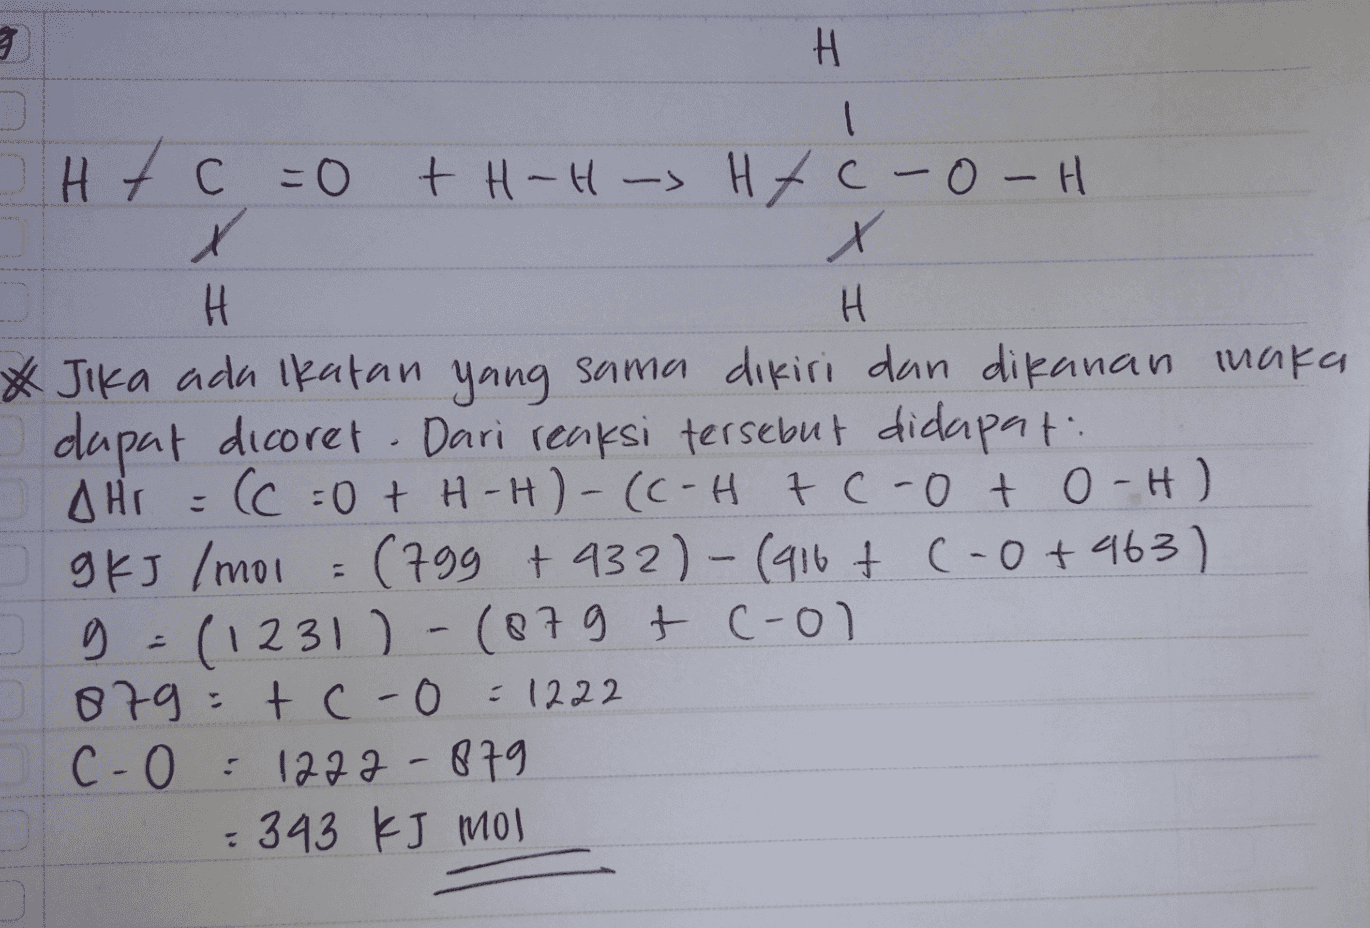 3 H I Htc =0 + H -H -> Htc-O-H X X H H * Jika ada ikatan yang sama dikiri dan dikanan maka dapat dicoret . Dari reaksi tersebut didapat: AHI = (C = 0 + H-H)-(C-Htc-oto-H) g KJ /mol = (799 +932)-(916+ (-0+463) g=(1231) -(879 + cool 879 tc-0 =1222 c-0 :1272-879 = 343 kJ mol 